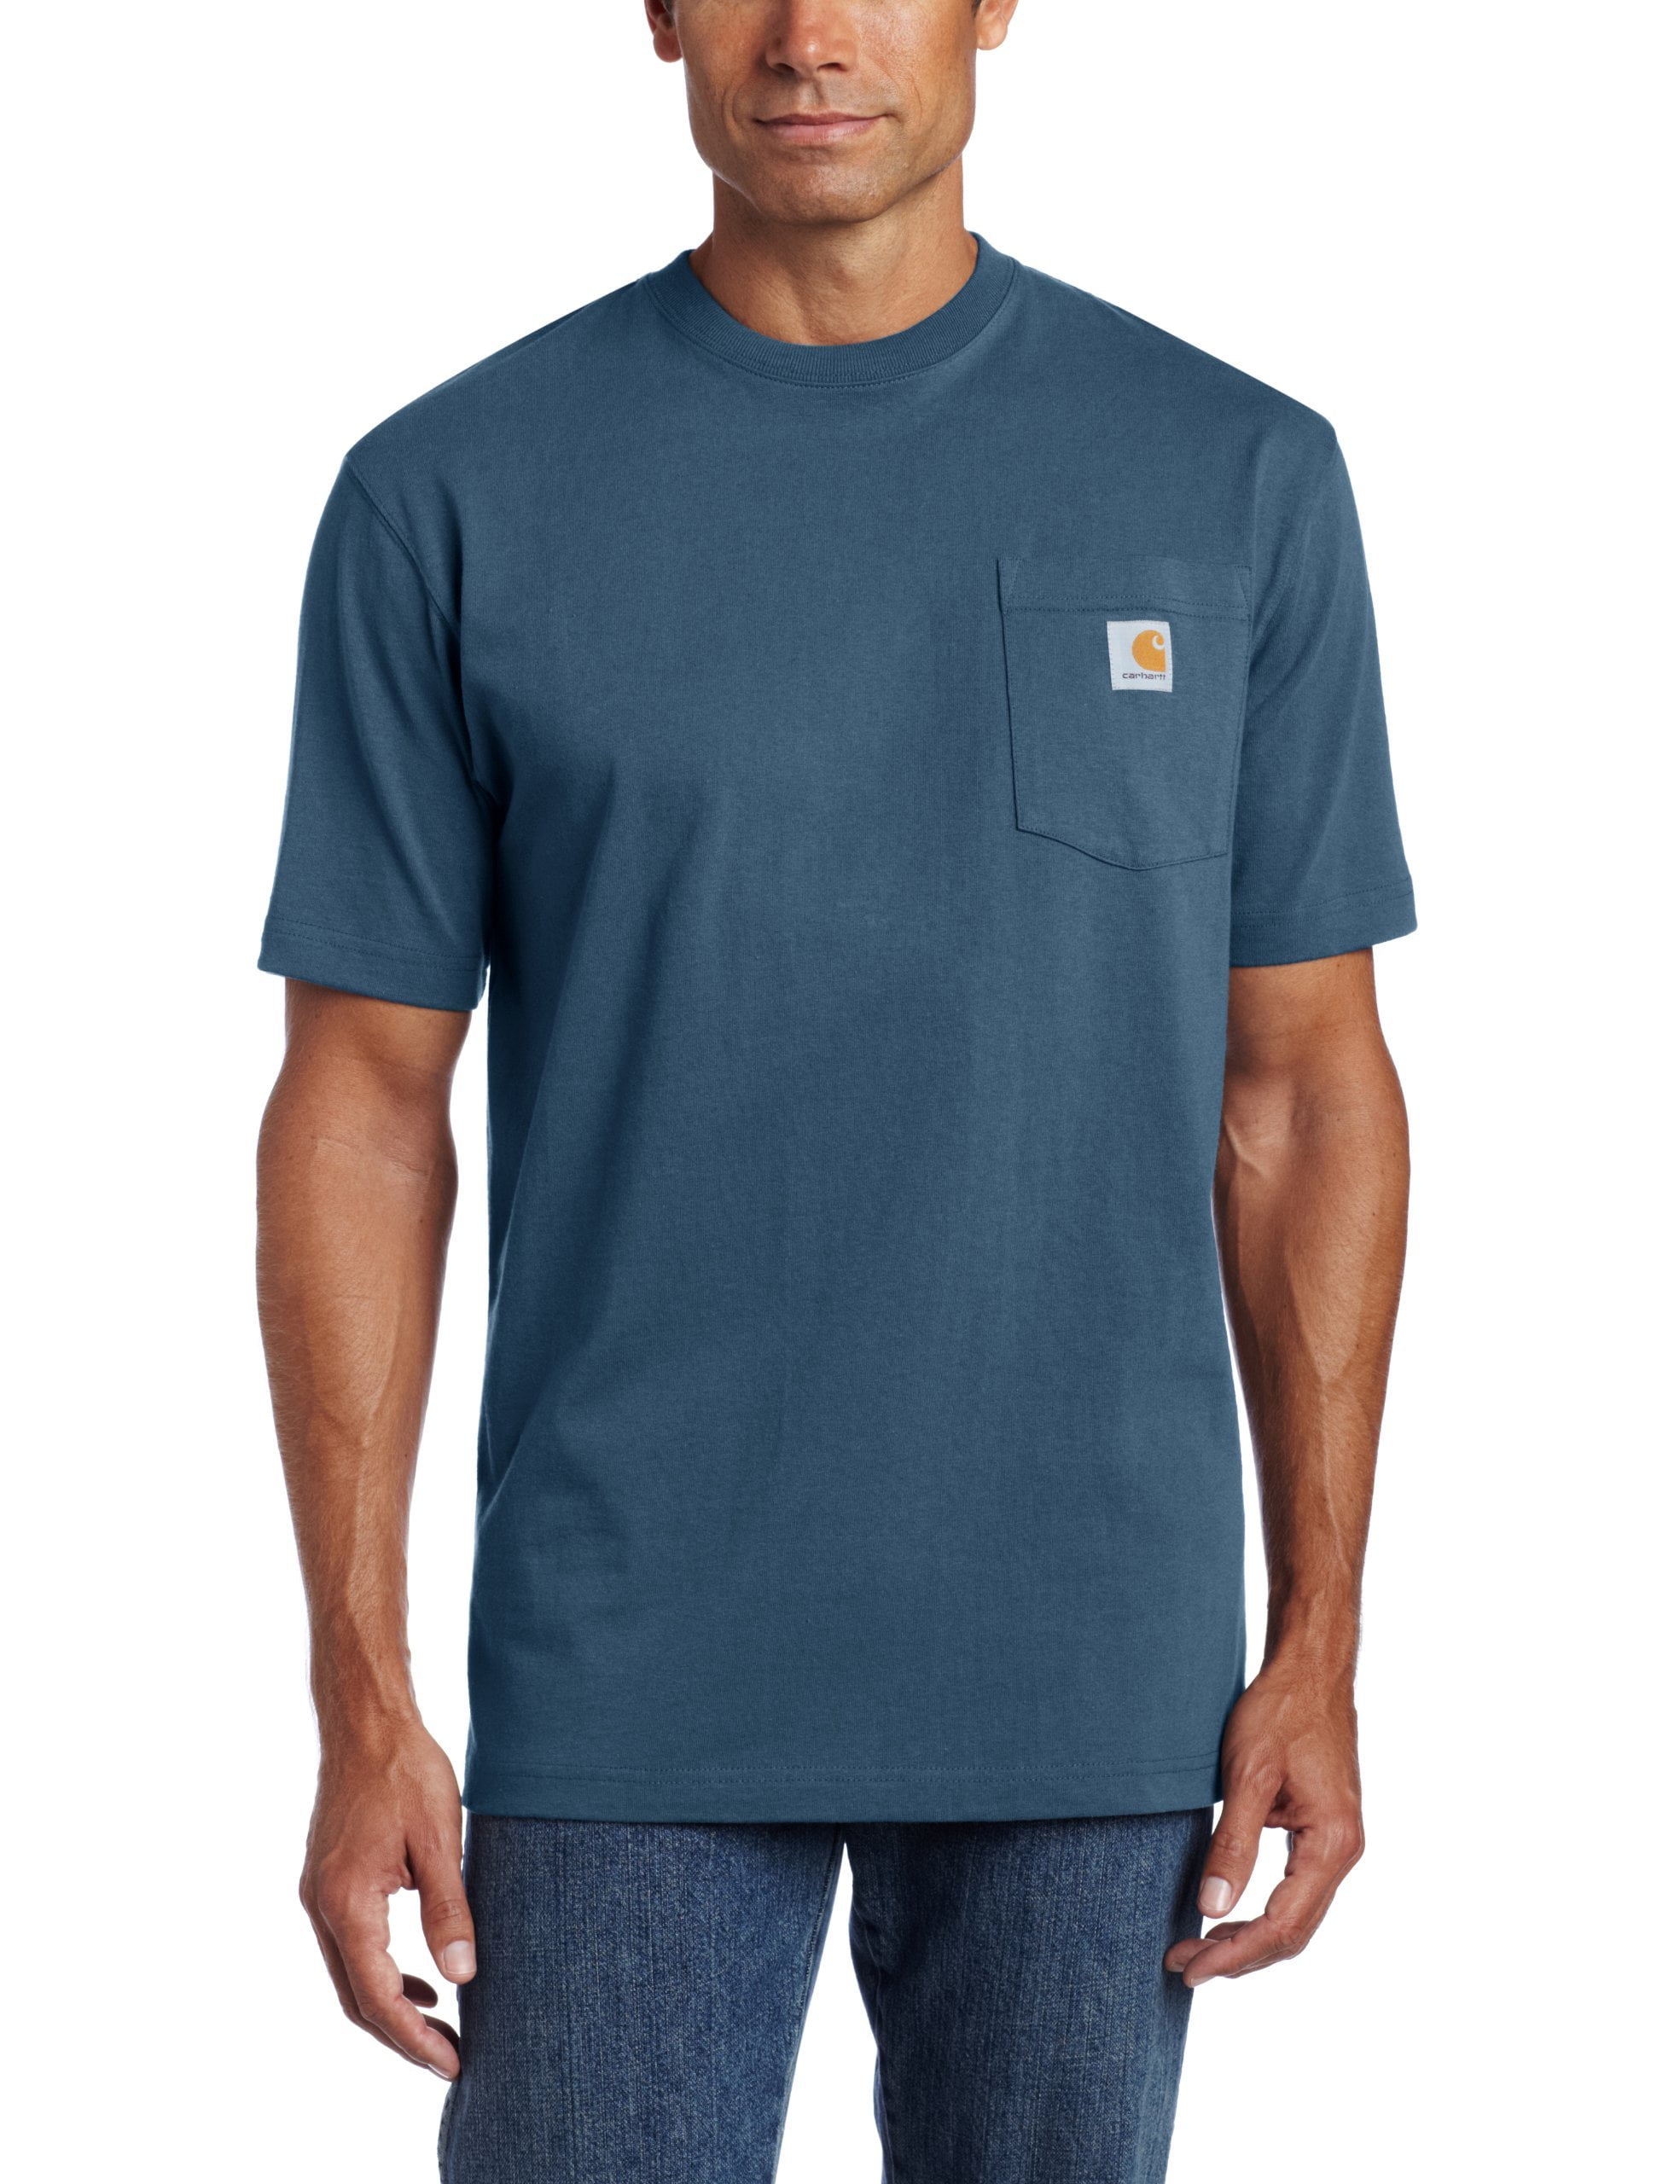 Carhartt - Carhartt Workwear Pocket Short Sleeve T-Shirt - Walmart.com